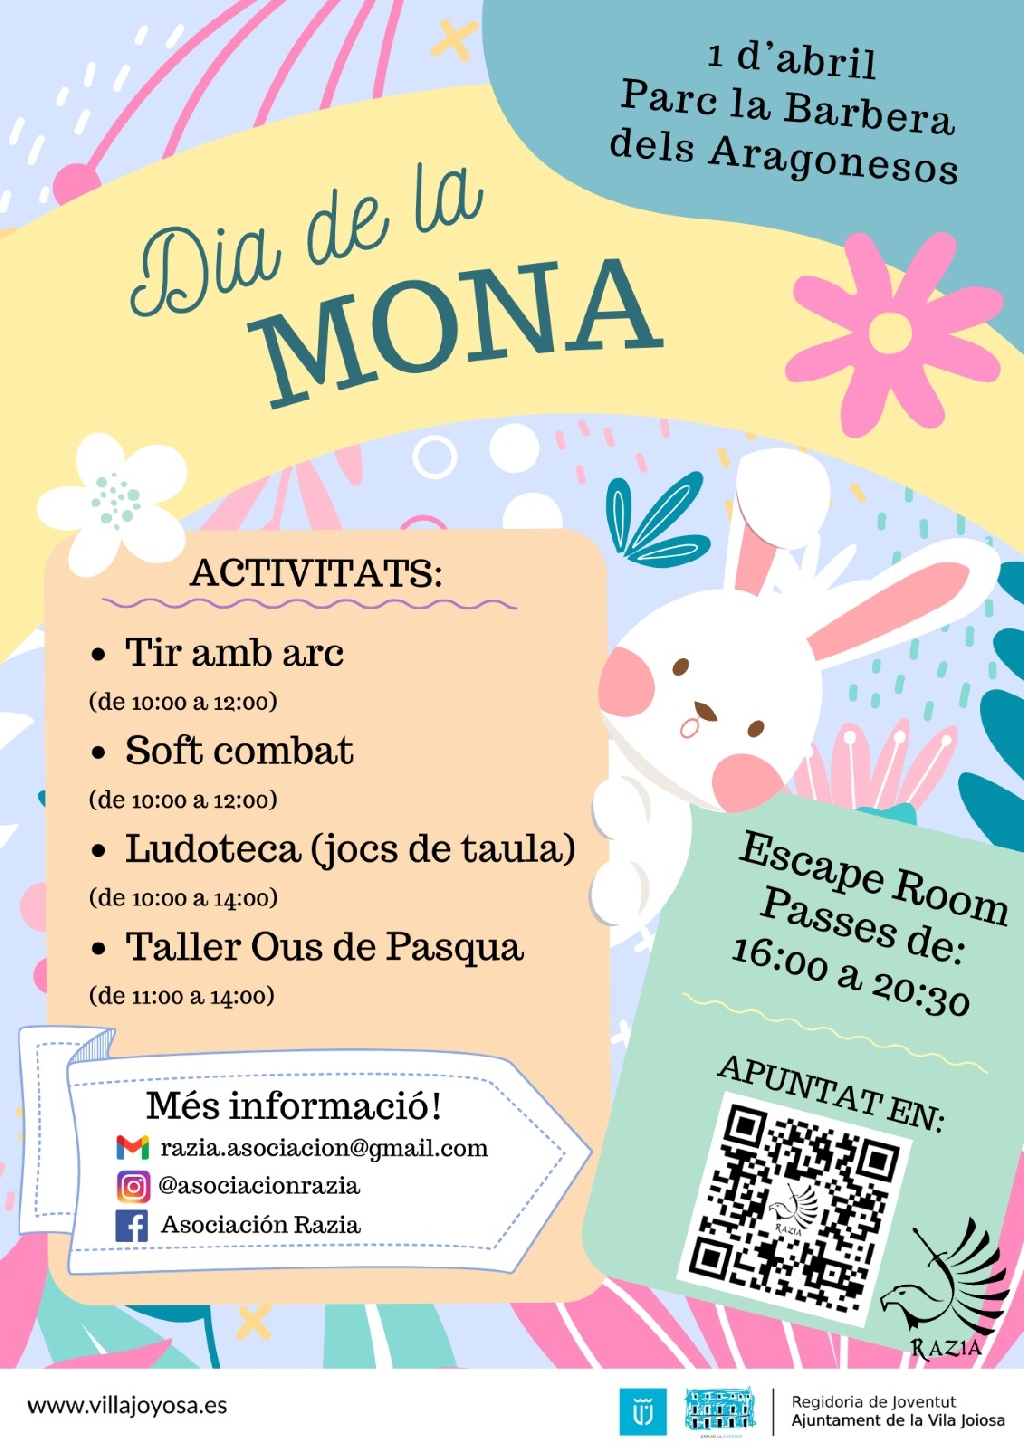 L'Ajuntament de la Vila Joiosa celebra el Dia de la Mona amb una jornada d'activitats al parc de la Barbera